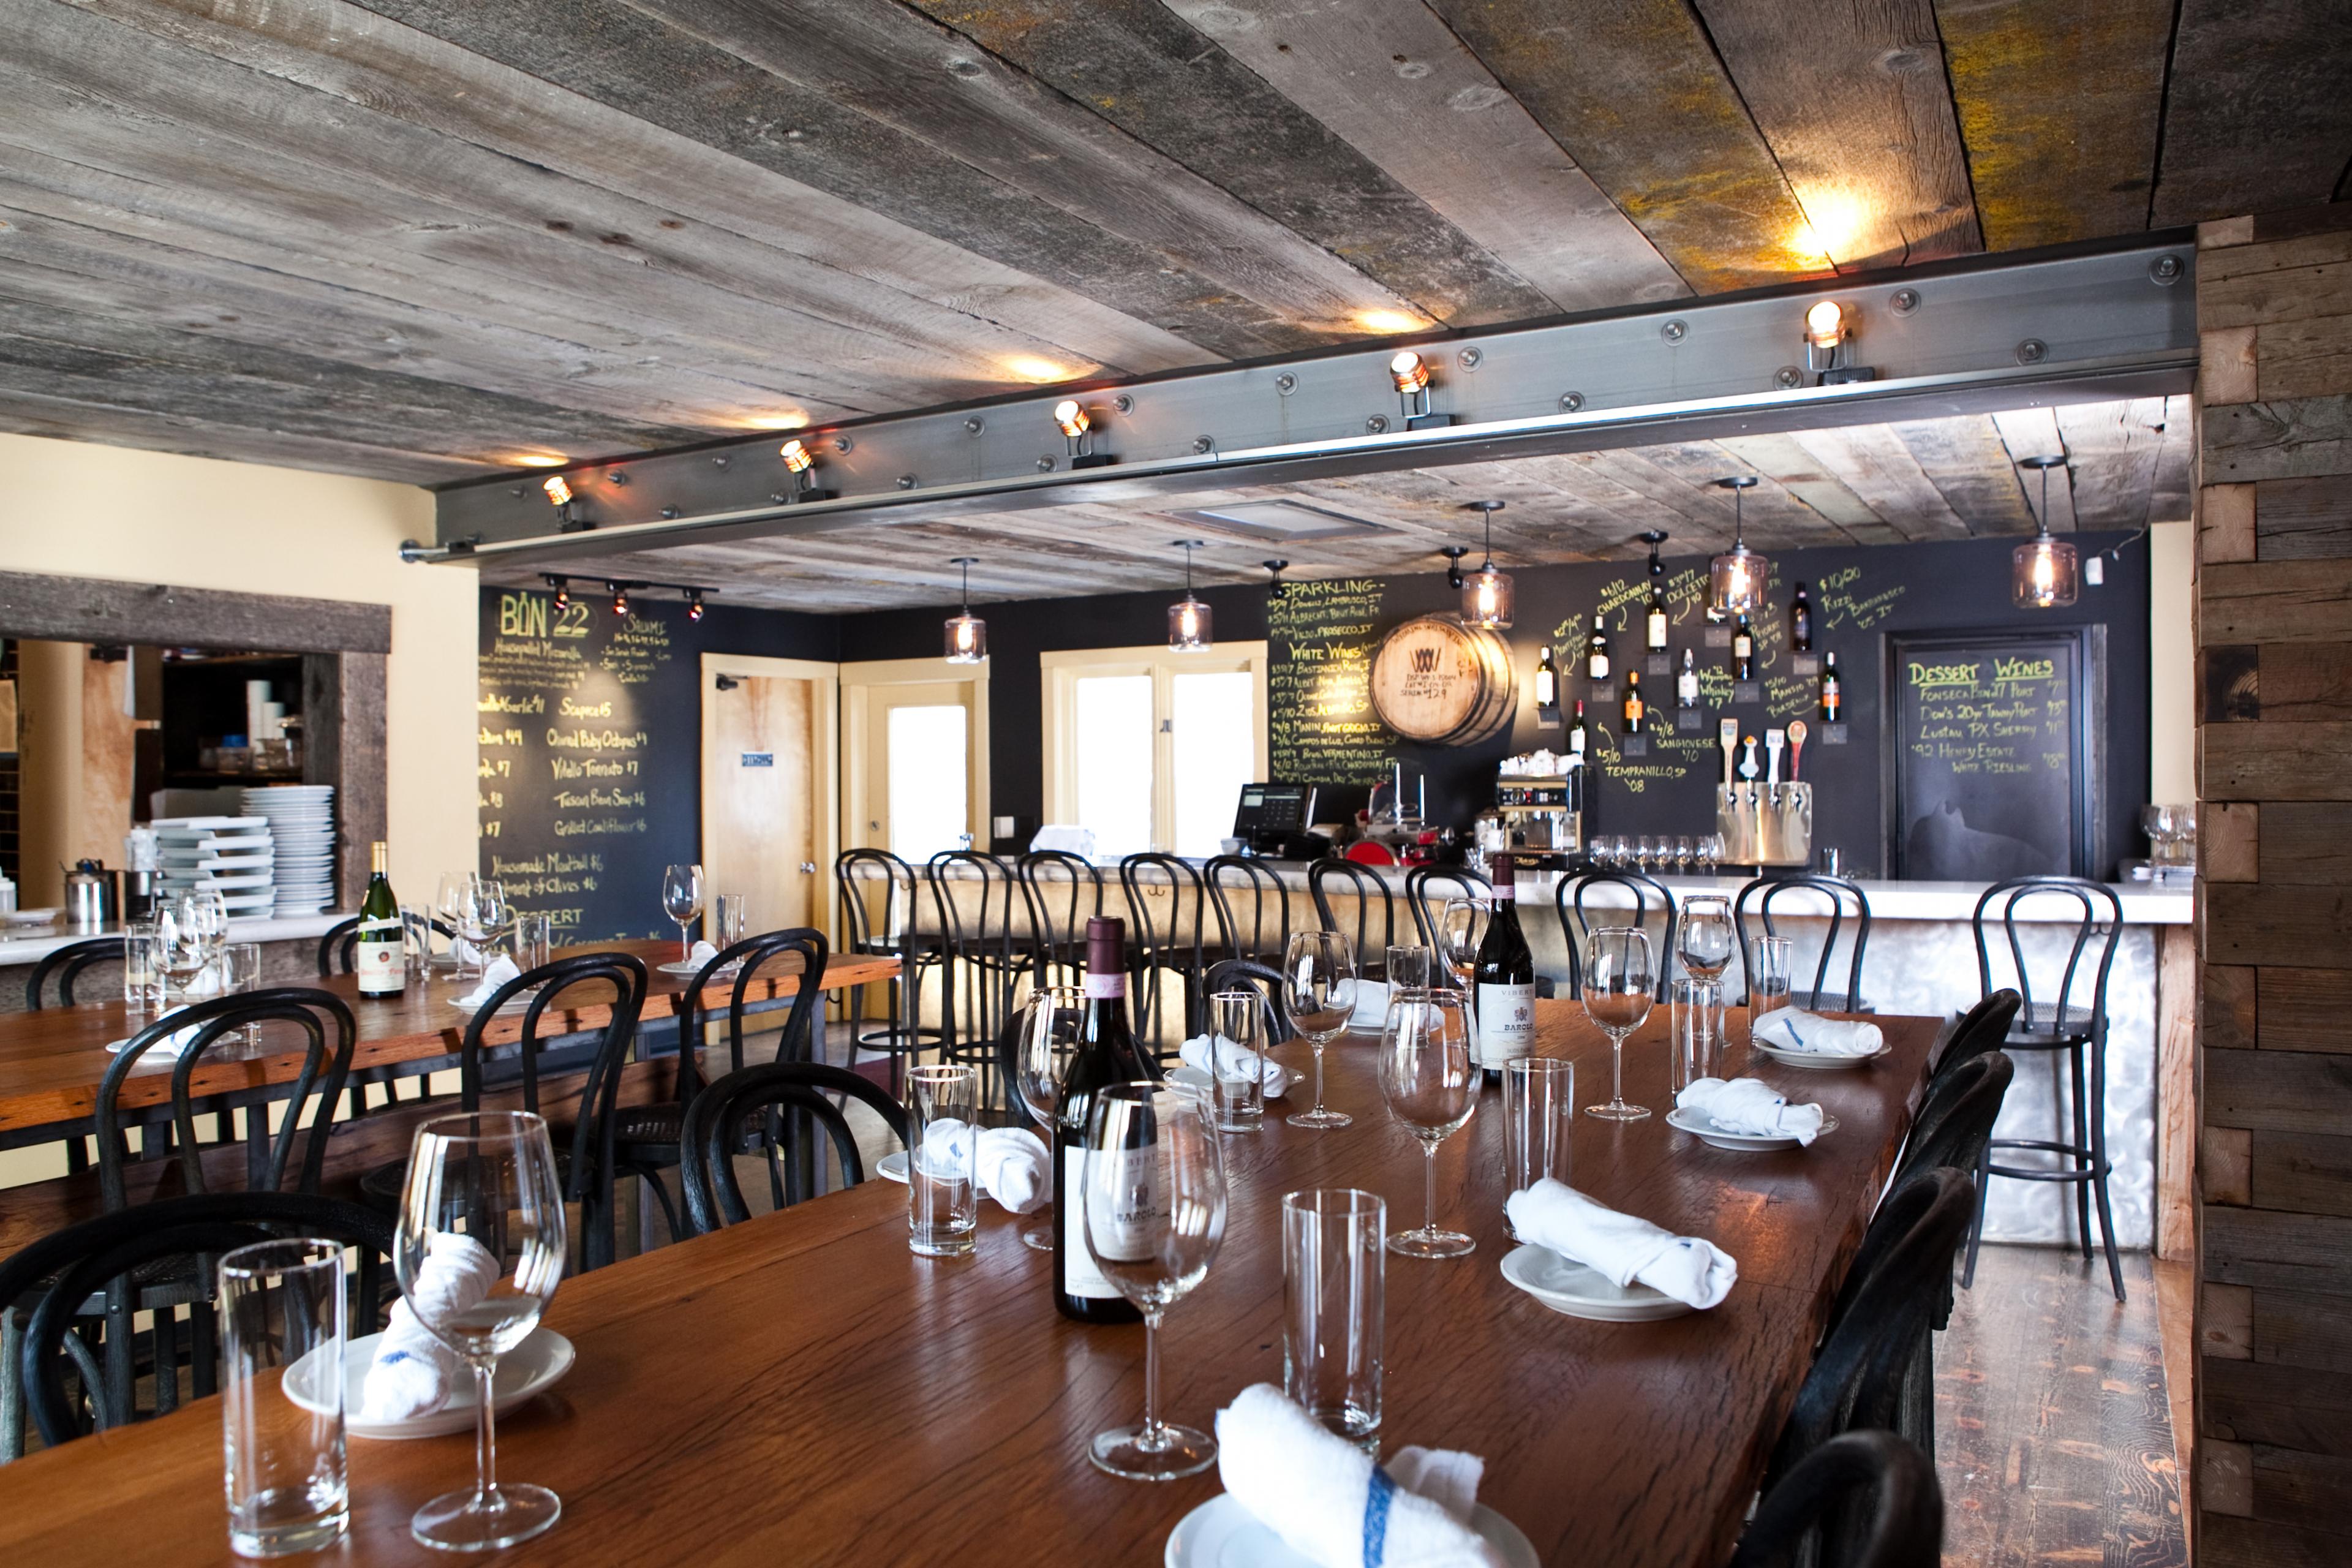 Sleek wooden wine bar interior